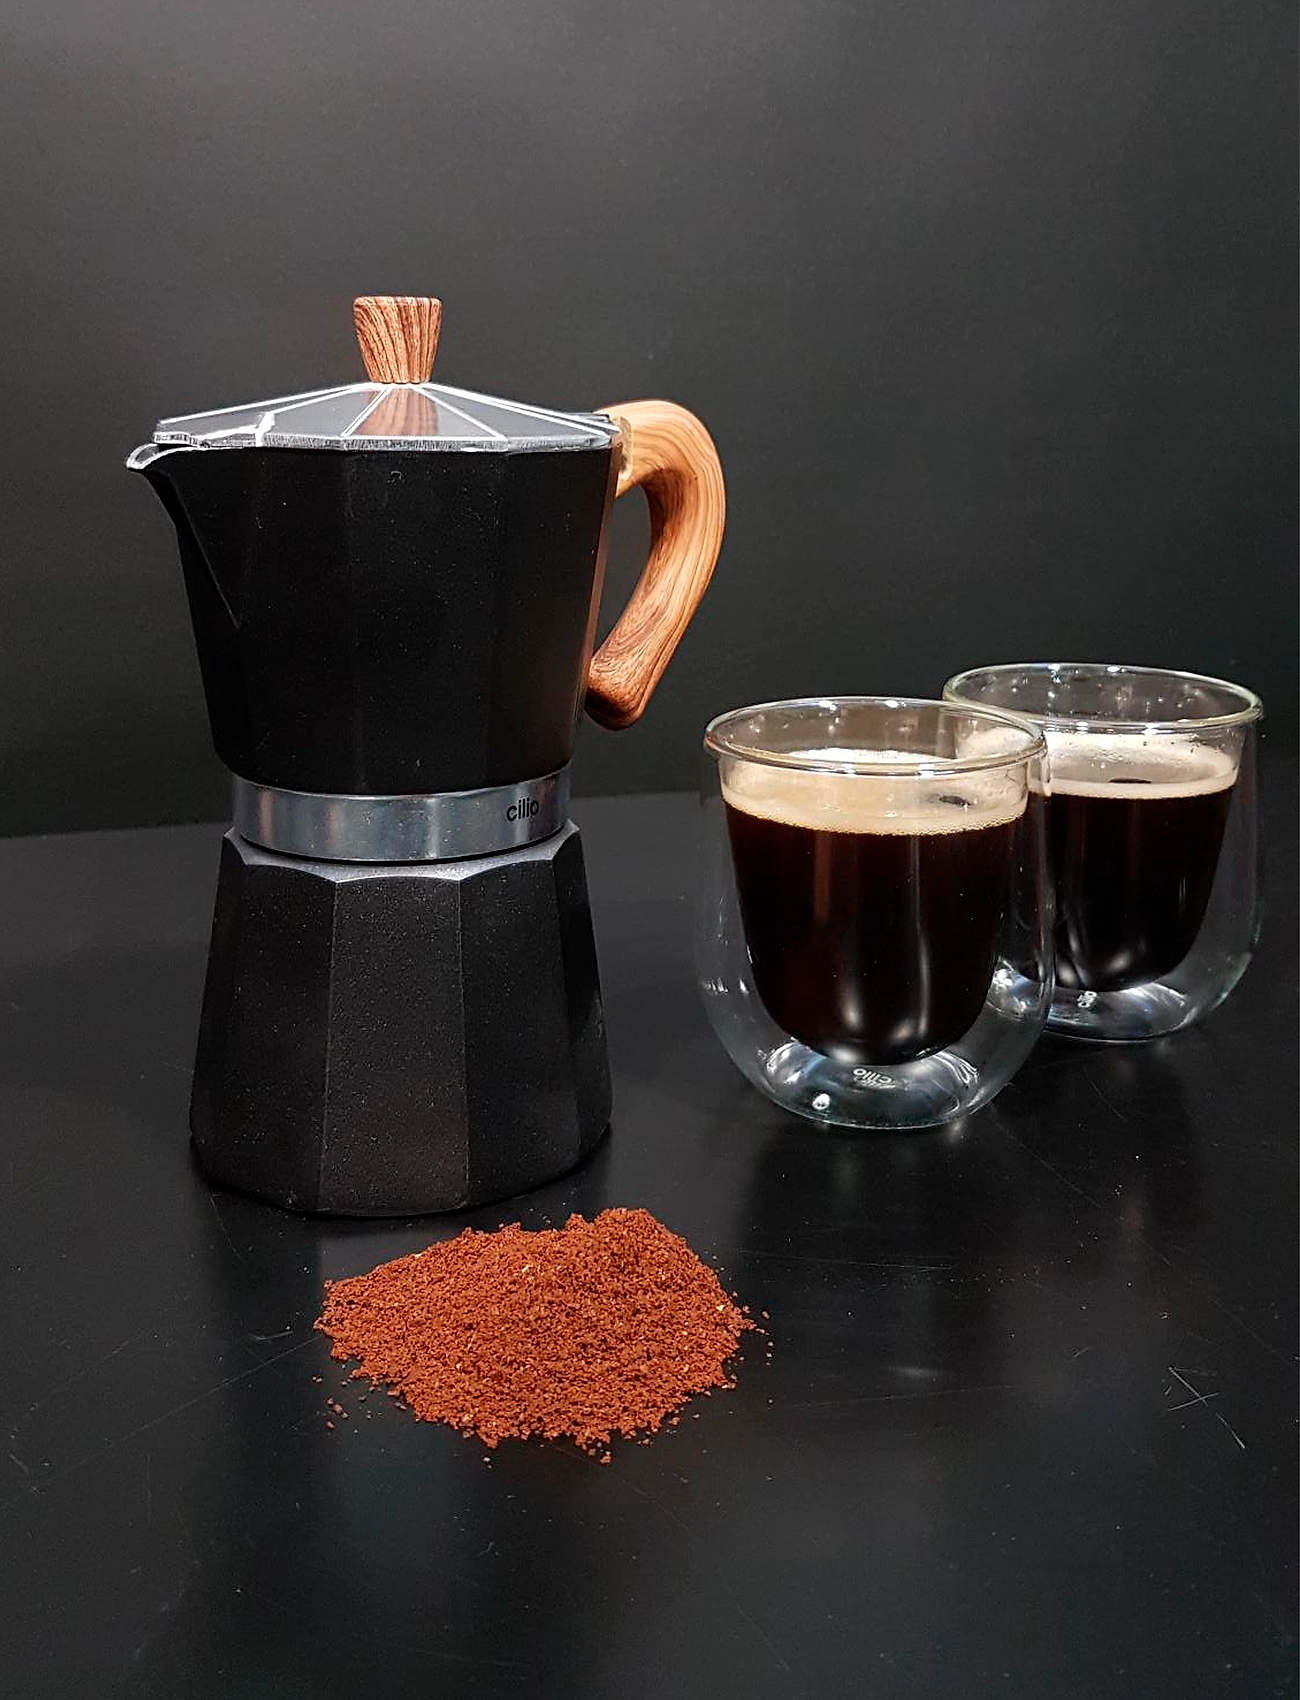 cilio - Espresso maker CLASSICO NATURA 3 cups - moka pots - black - 1